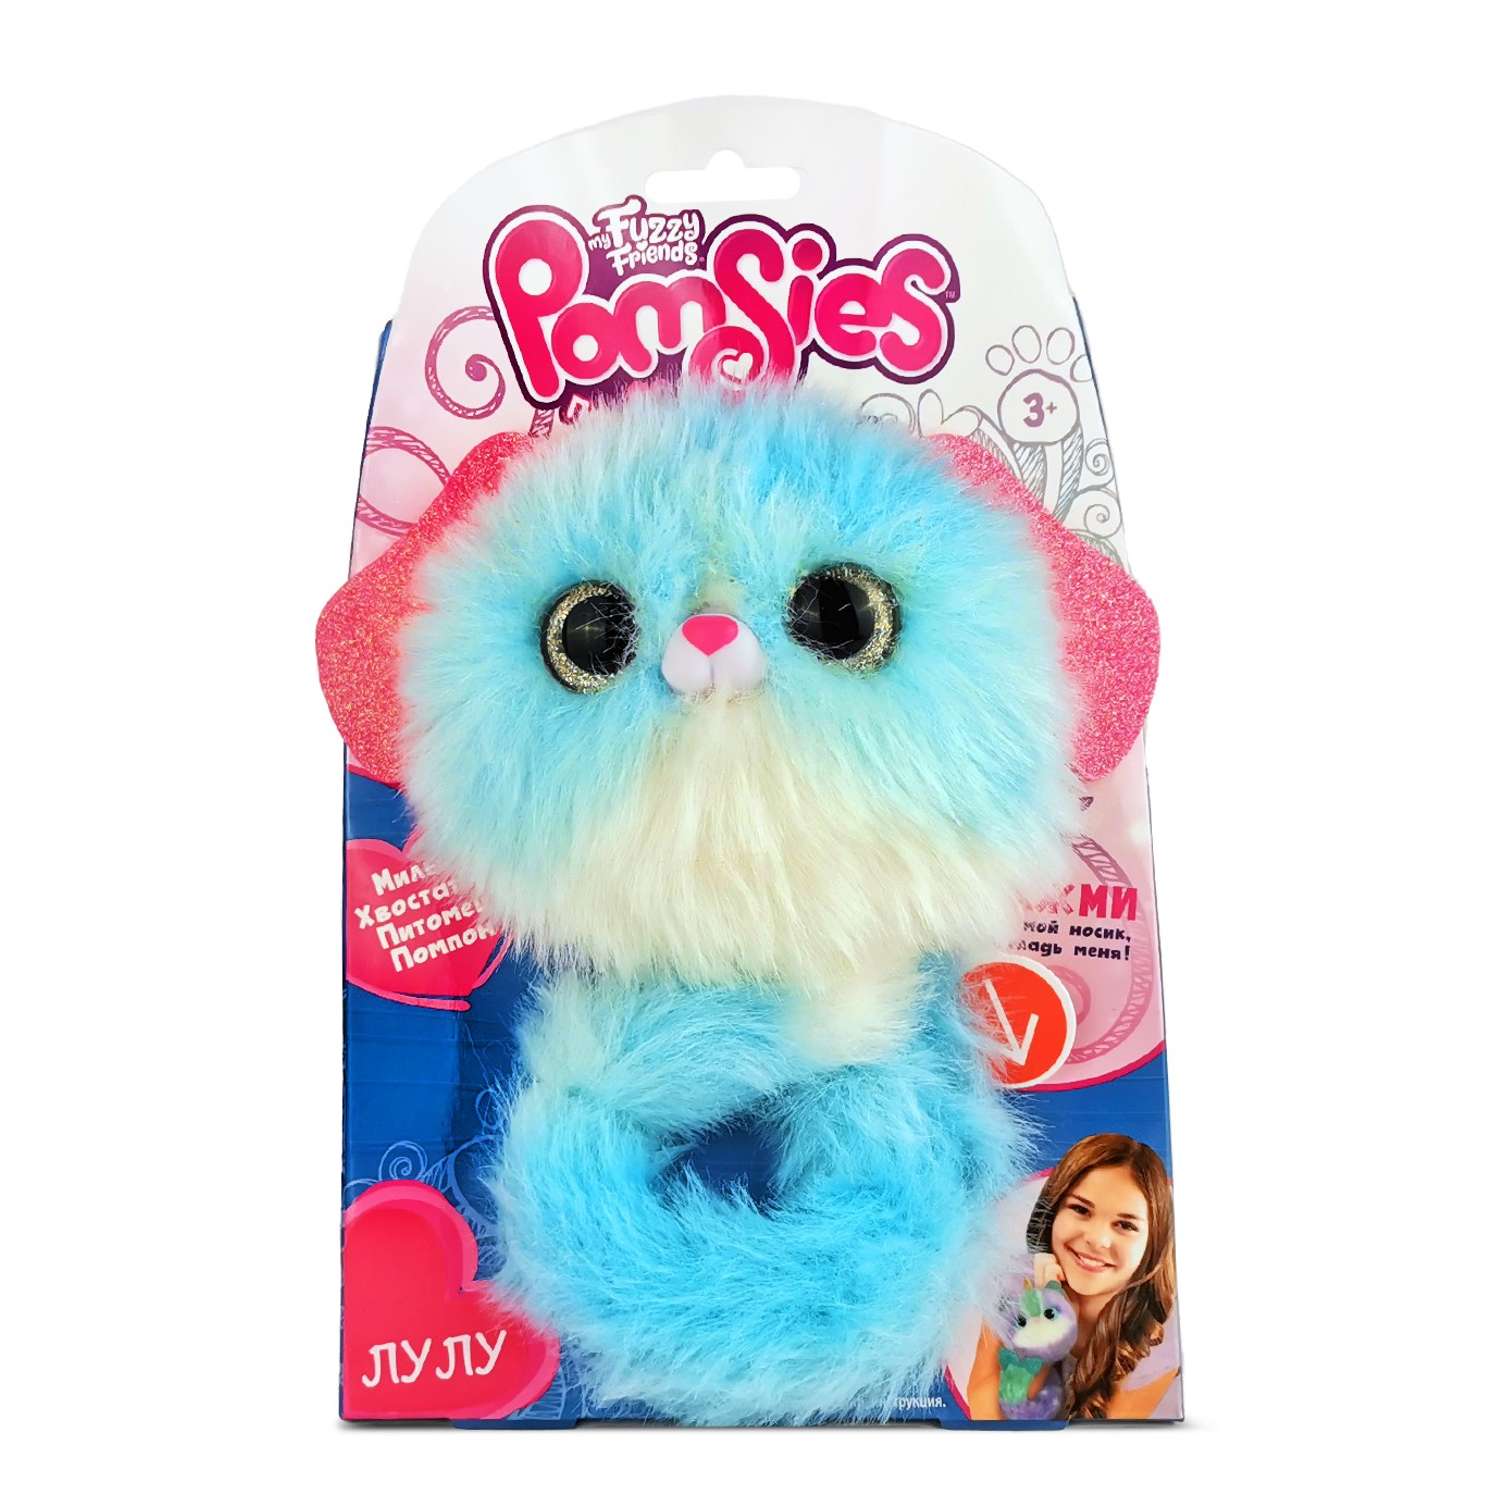 Интерактивная игрушка My Fuzzy Friends Pomsies собачка Лулу - фото 9